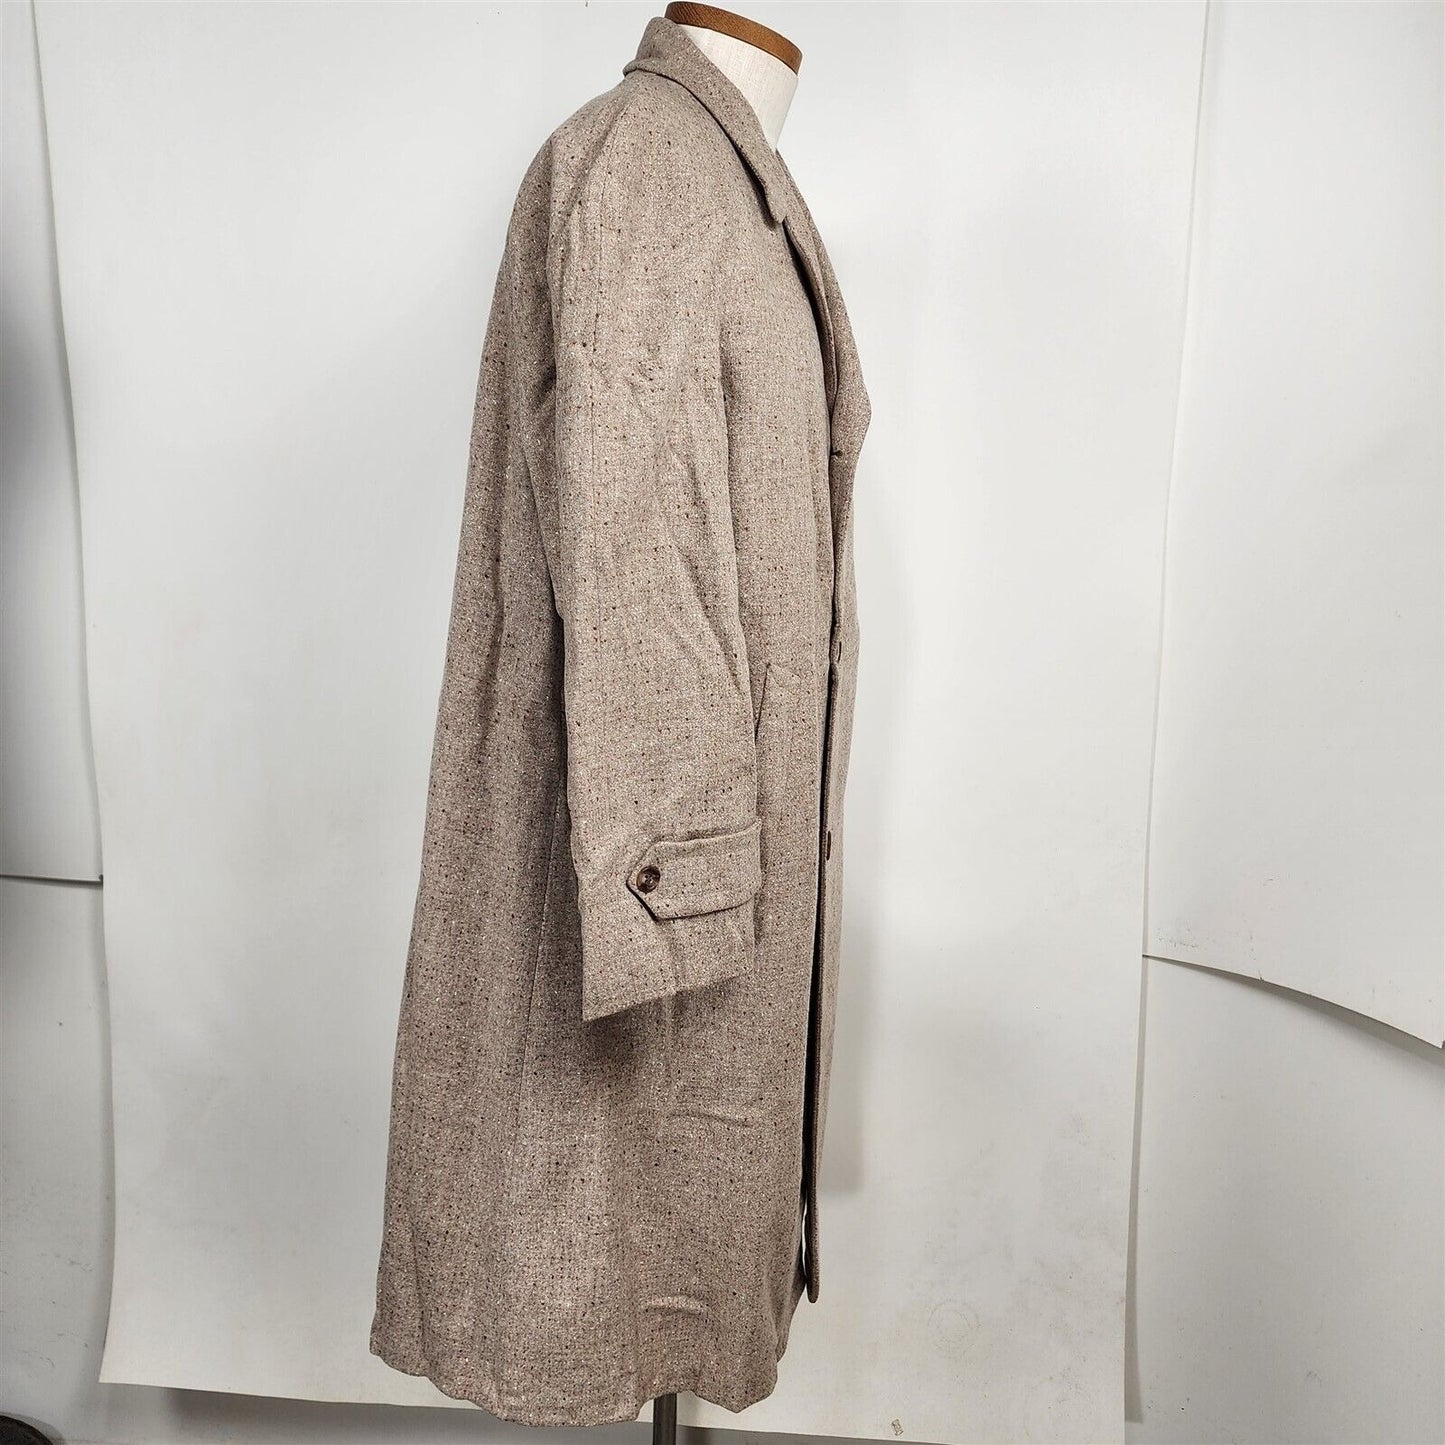 Vintage Giles Beige Speckled Mens Tweed Overcoat Topcoat